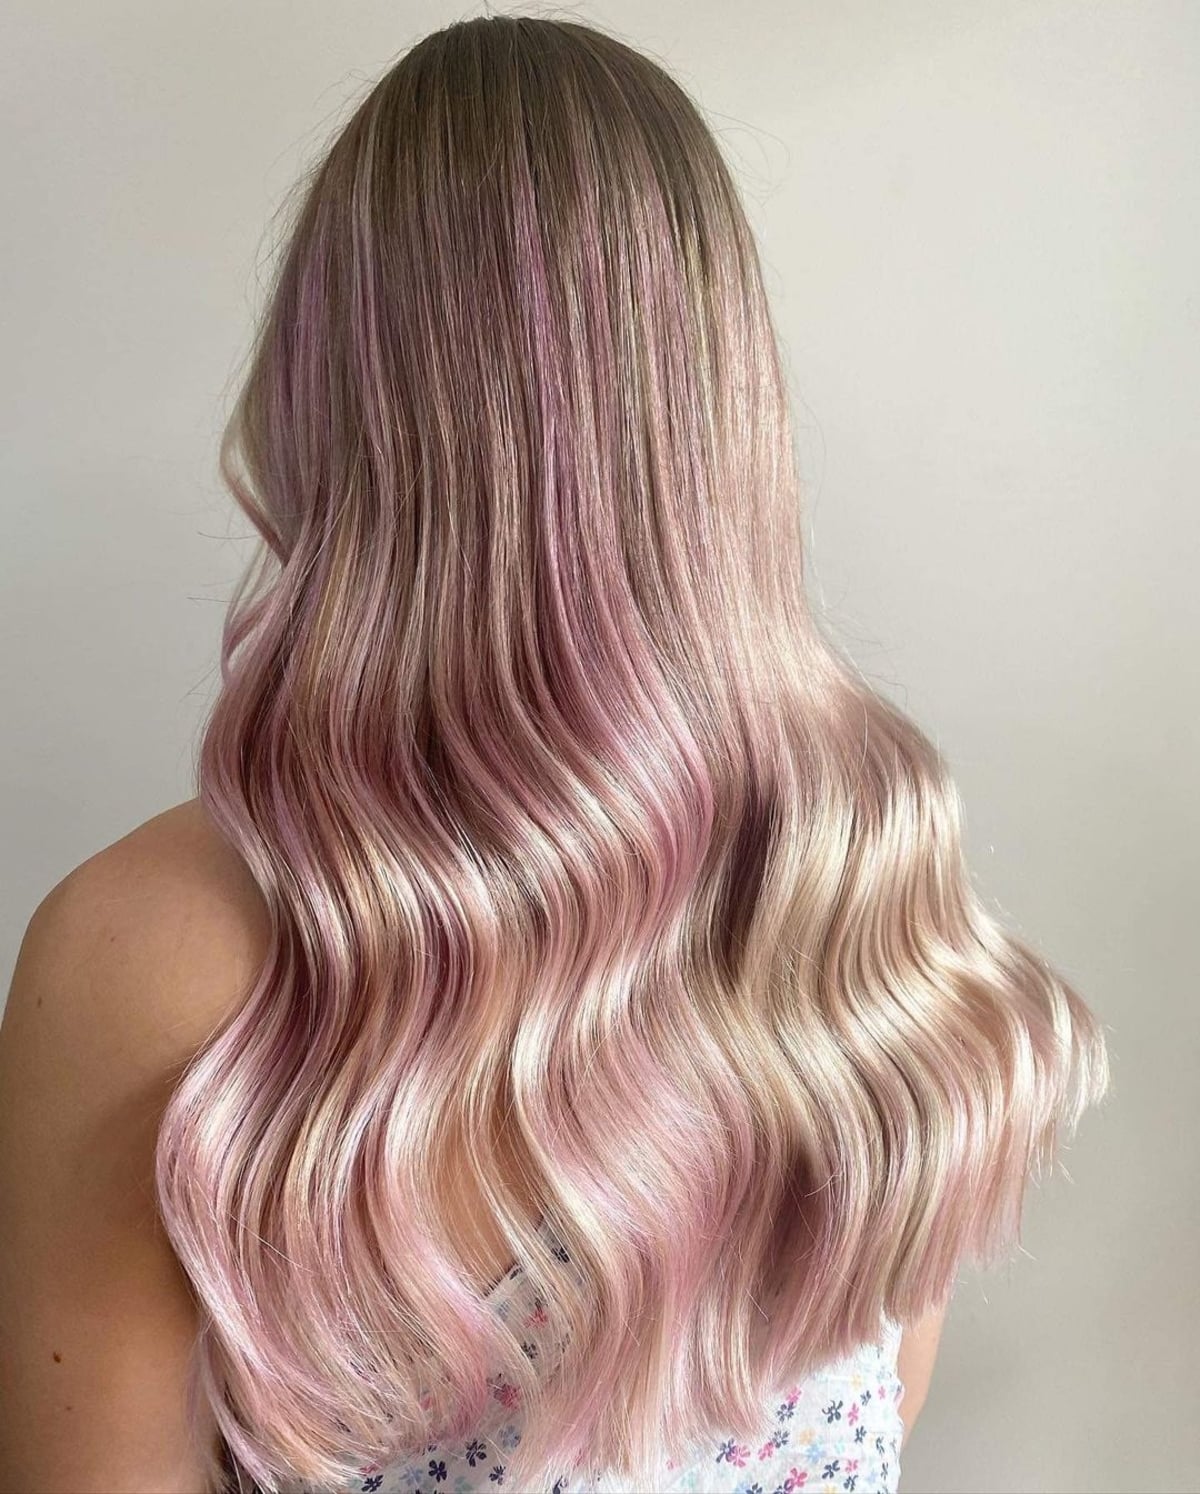 Blonde hair with pink streaks